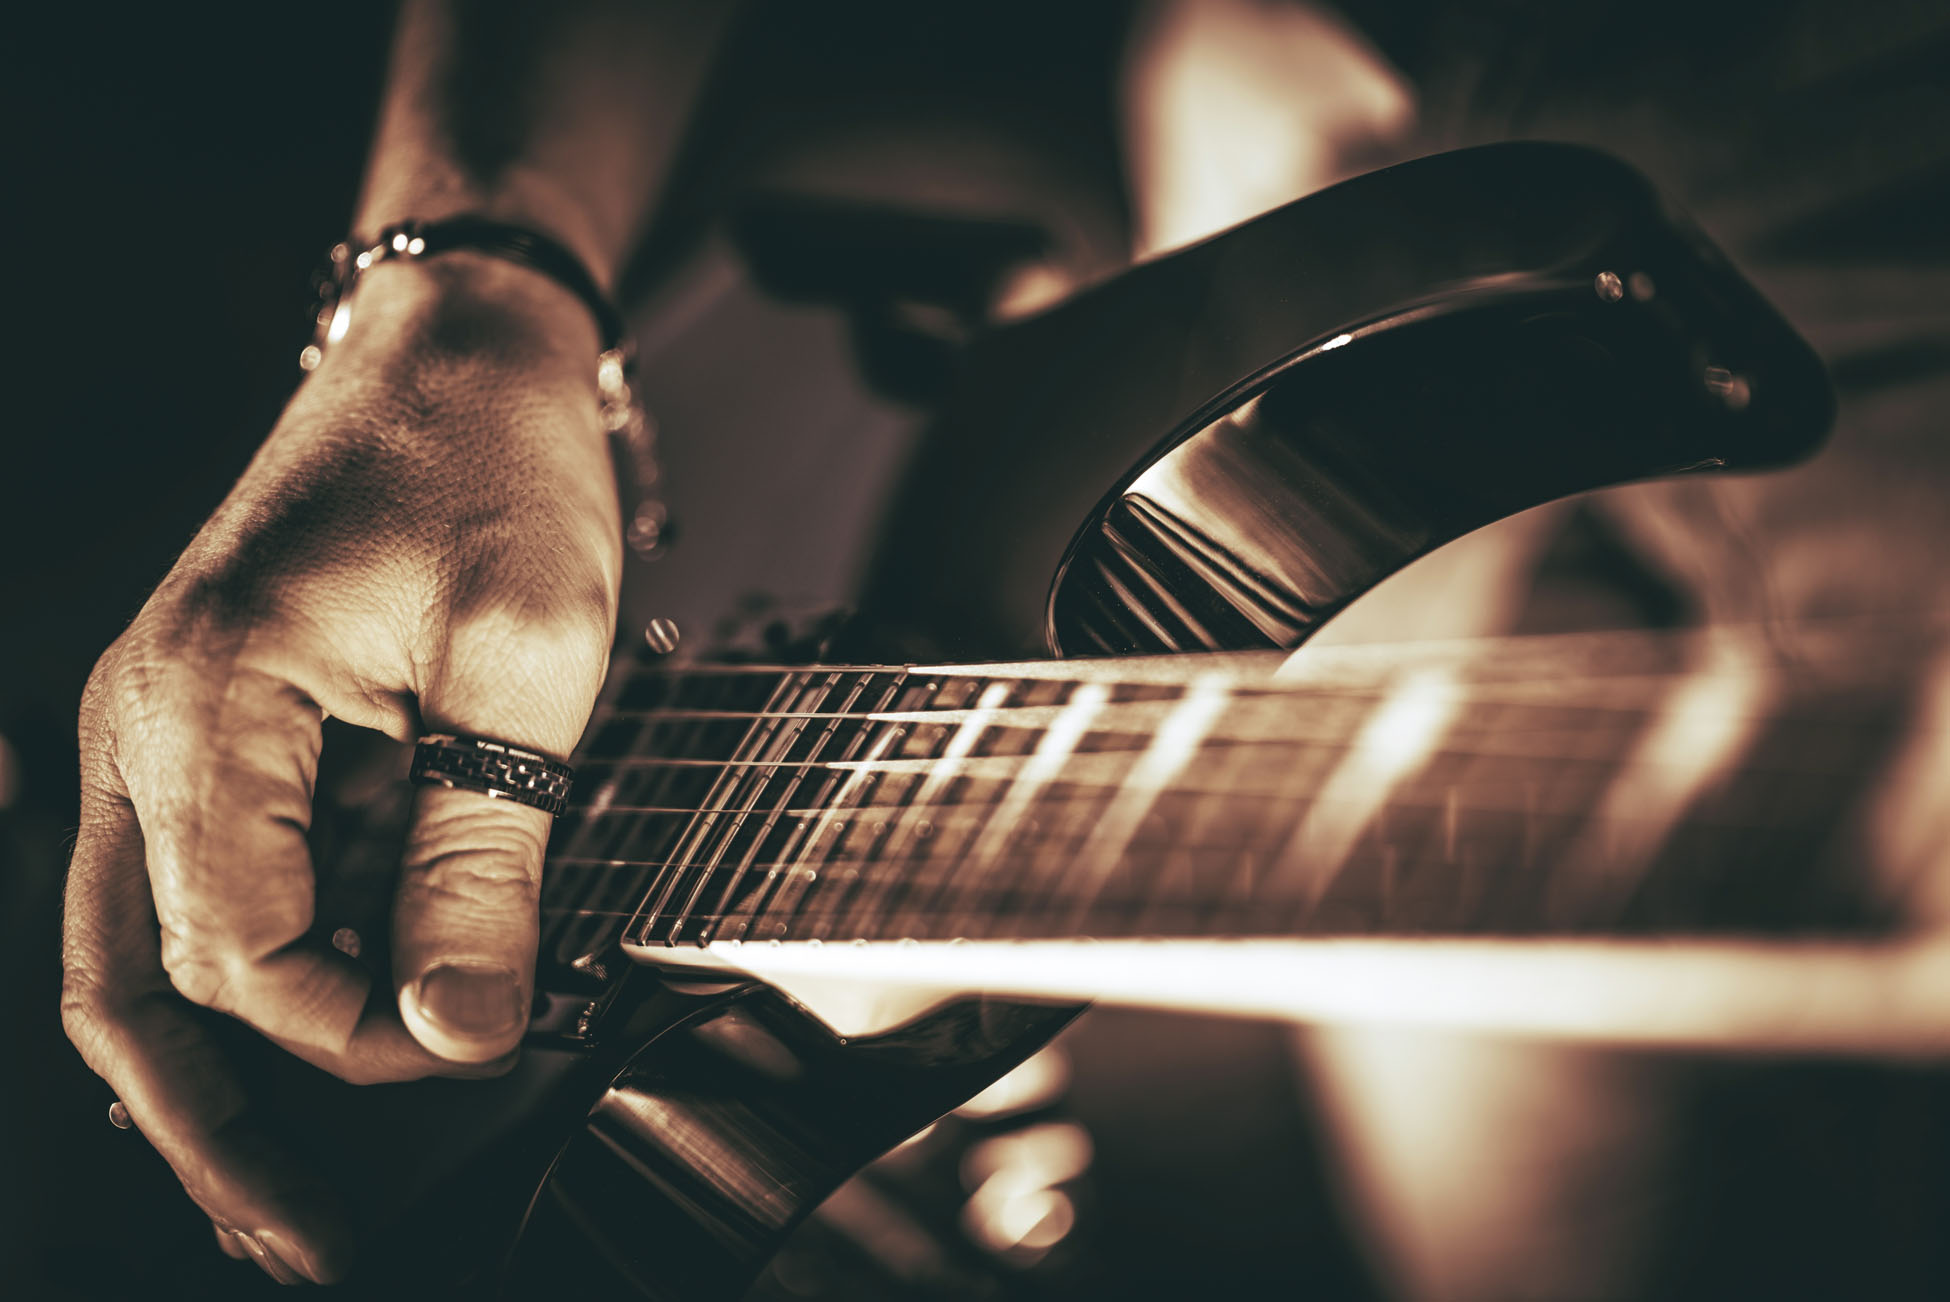 Guitarist Plays. Electric Guitar Playing Closeup Photo. Rockman Guitar Player Music Theme.